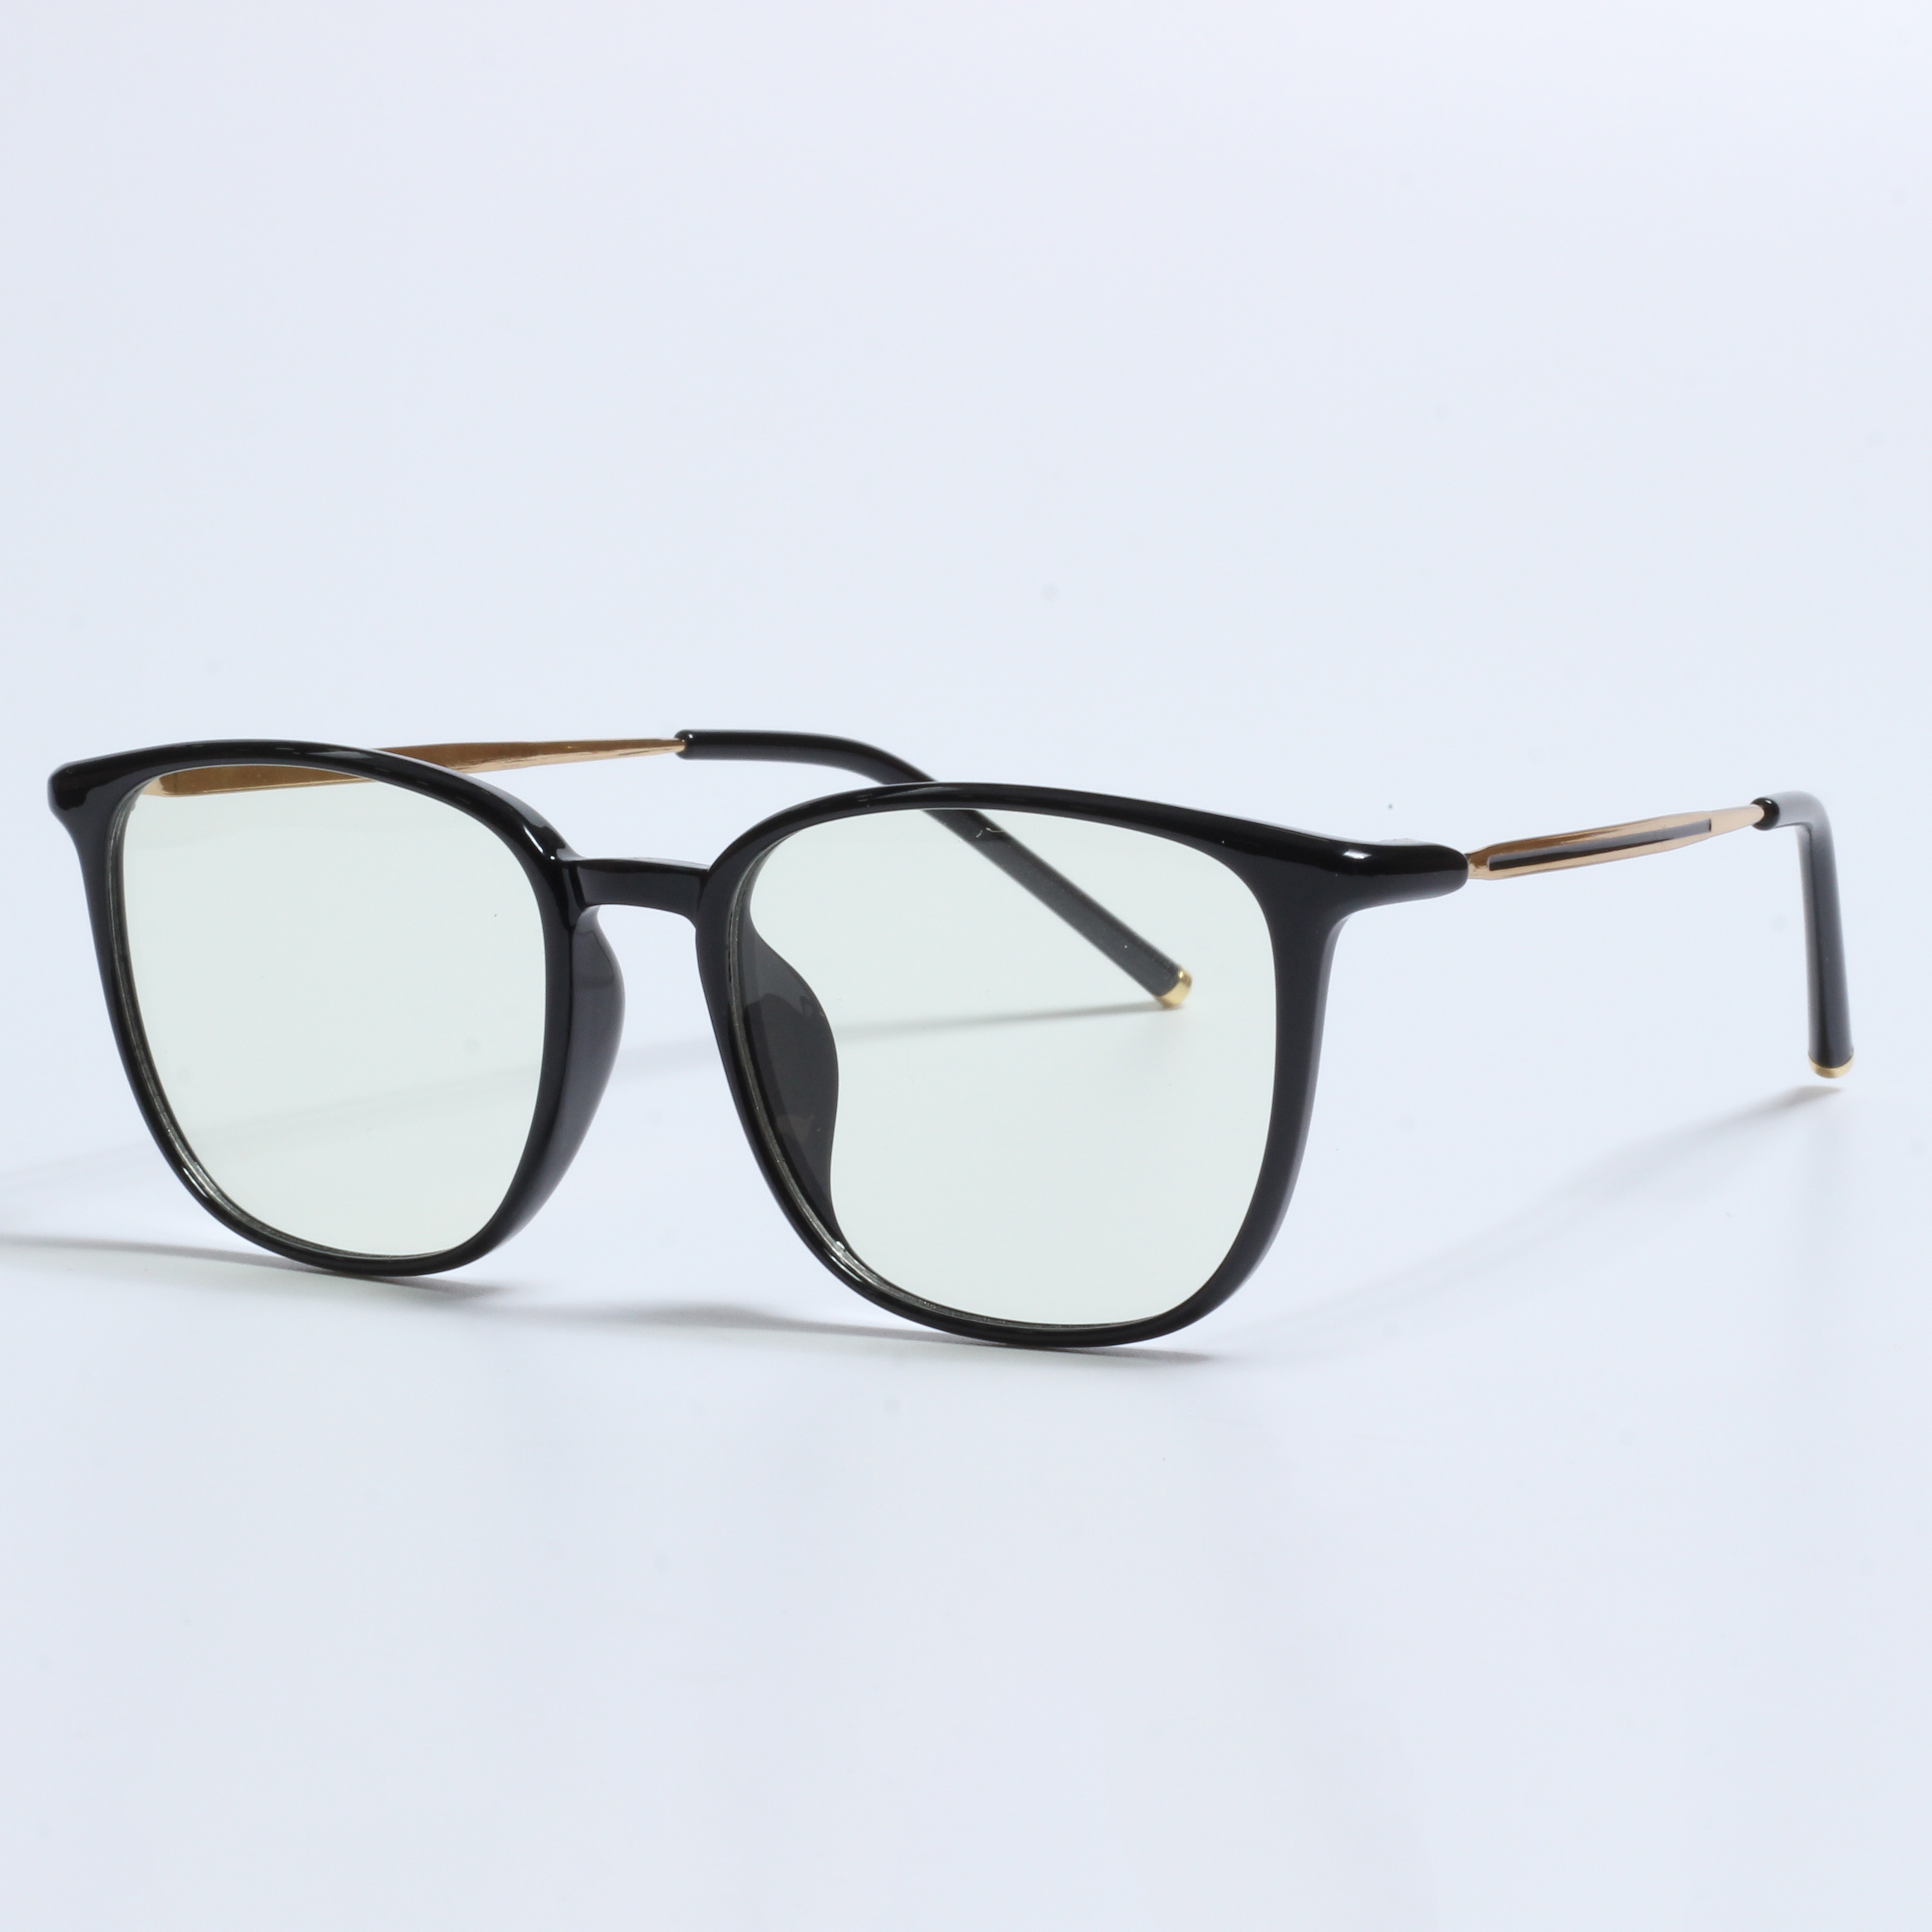 New retro lunette anti lumiere designer prescription glasses (2)